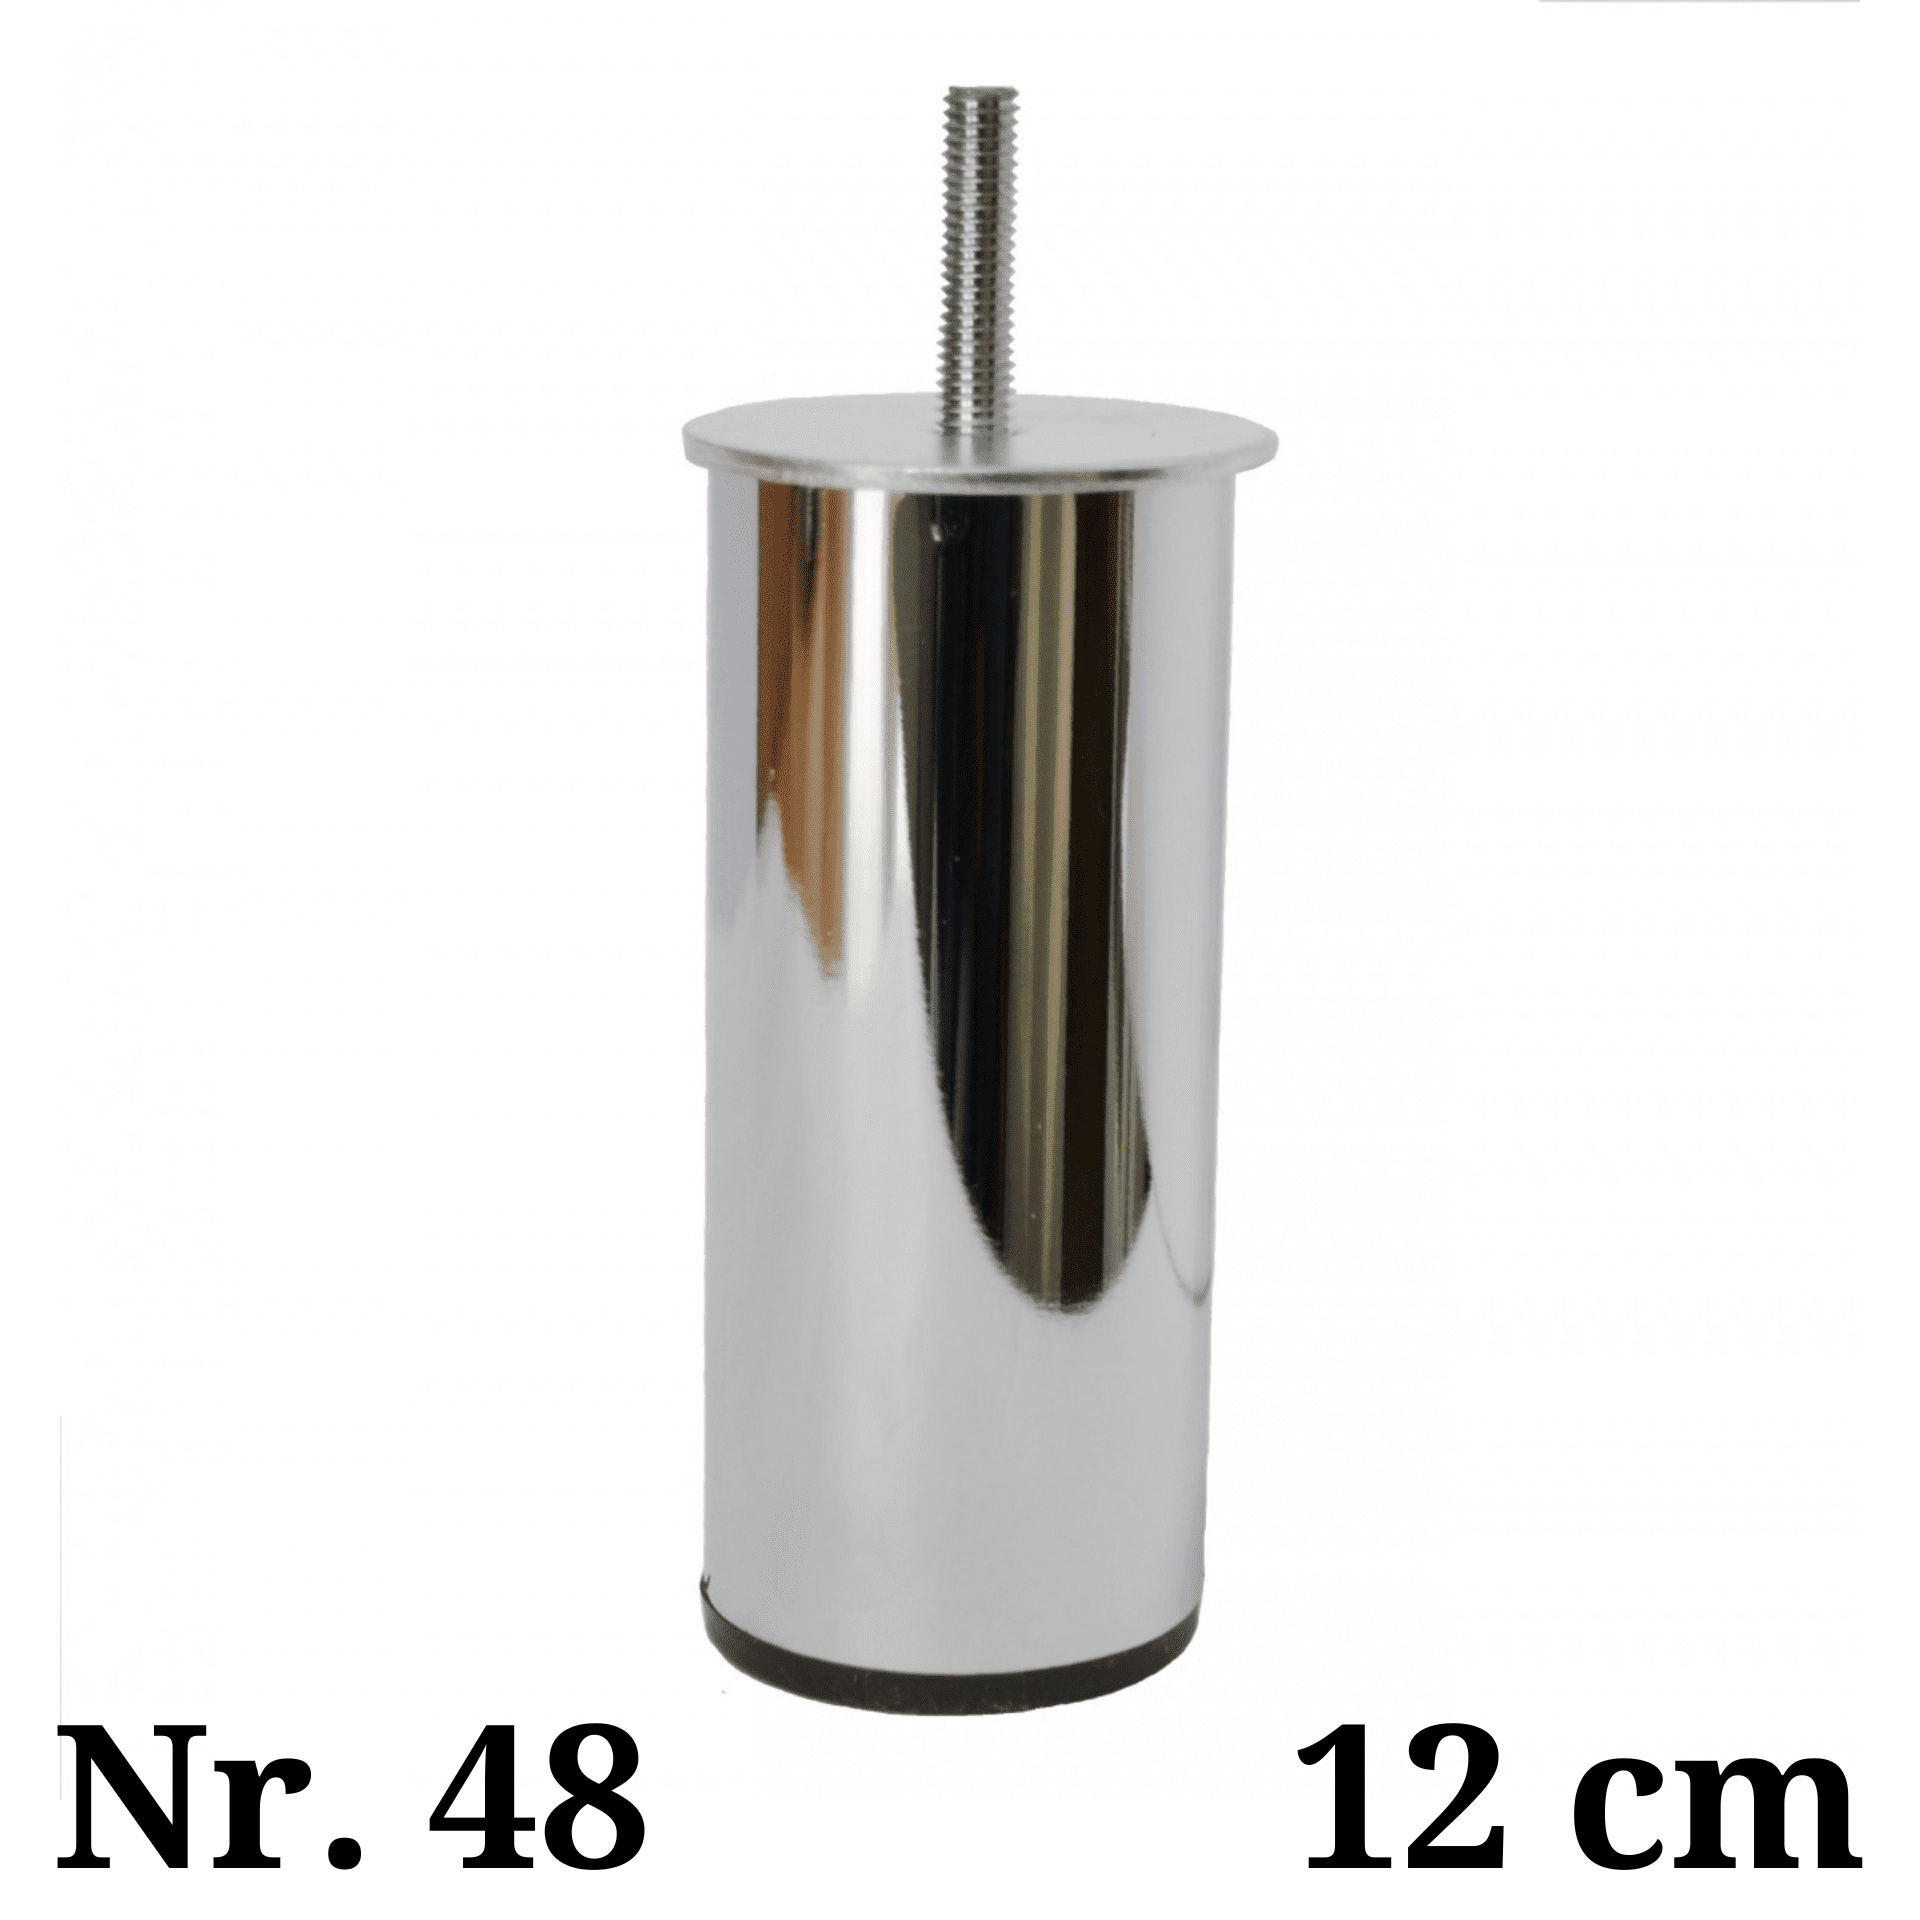 Metalinė kojelė Nr. 48 (Chromas)